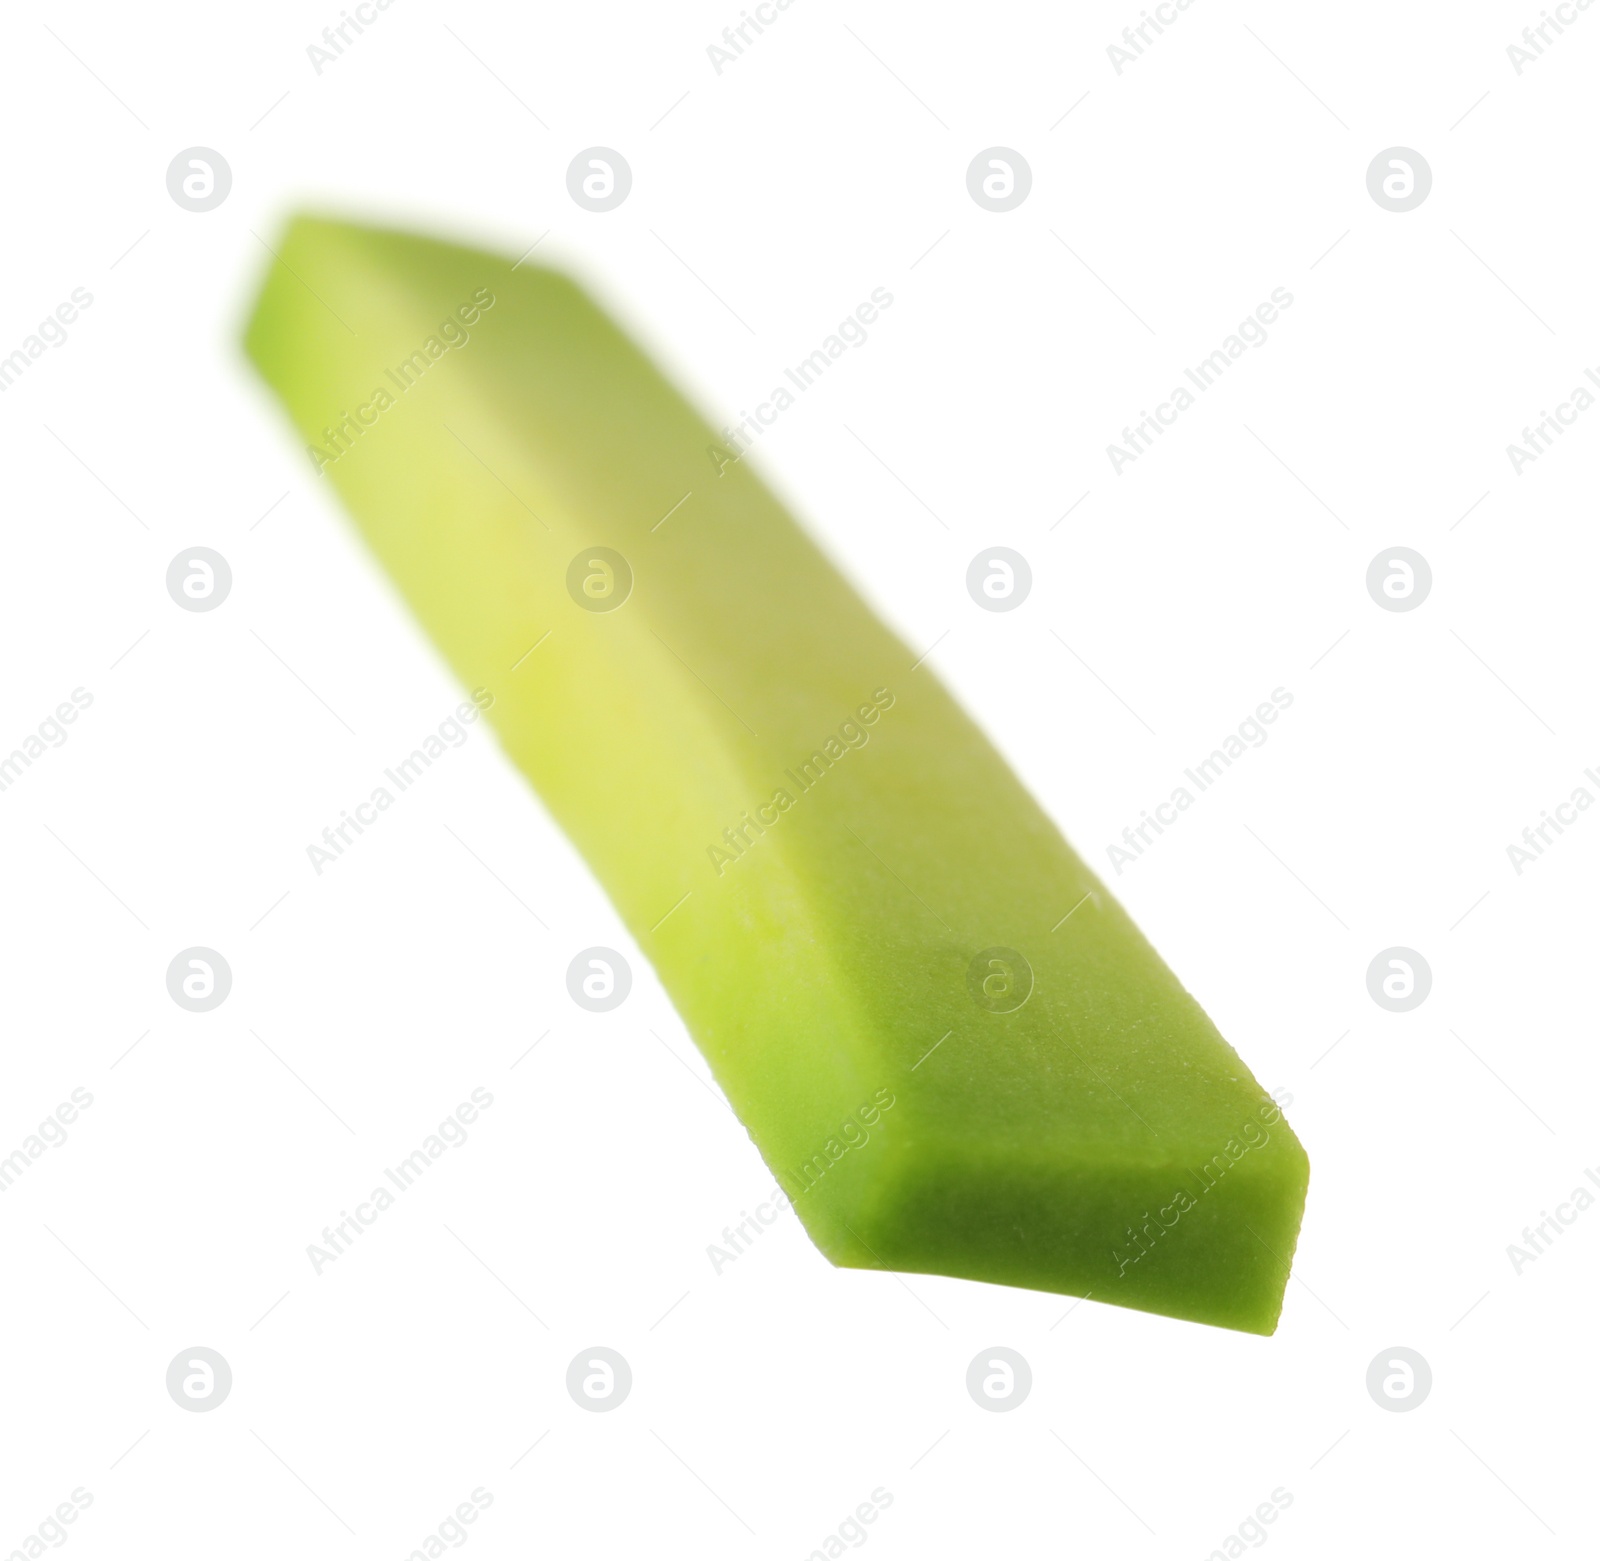 Photo of Slice of fresh avocado isolated on white